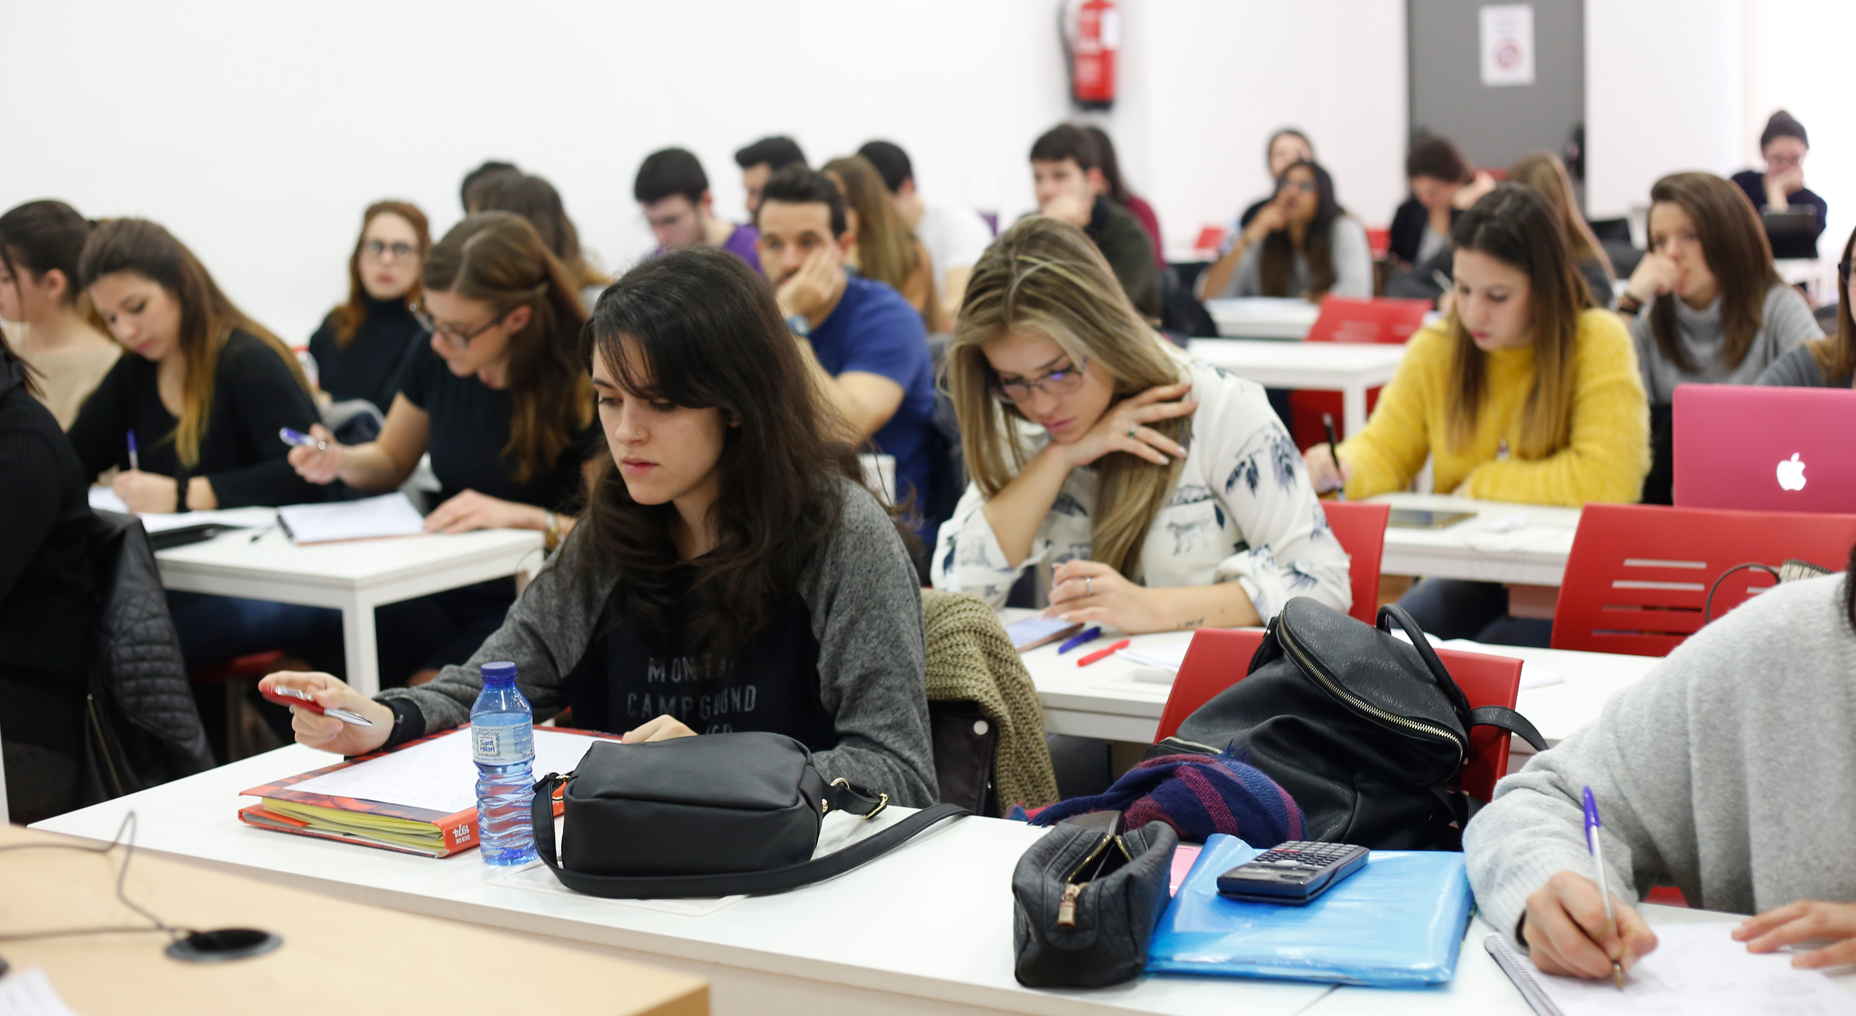 Somos Formatic | Escuela Universitaria Formatic Barcelona